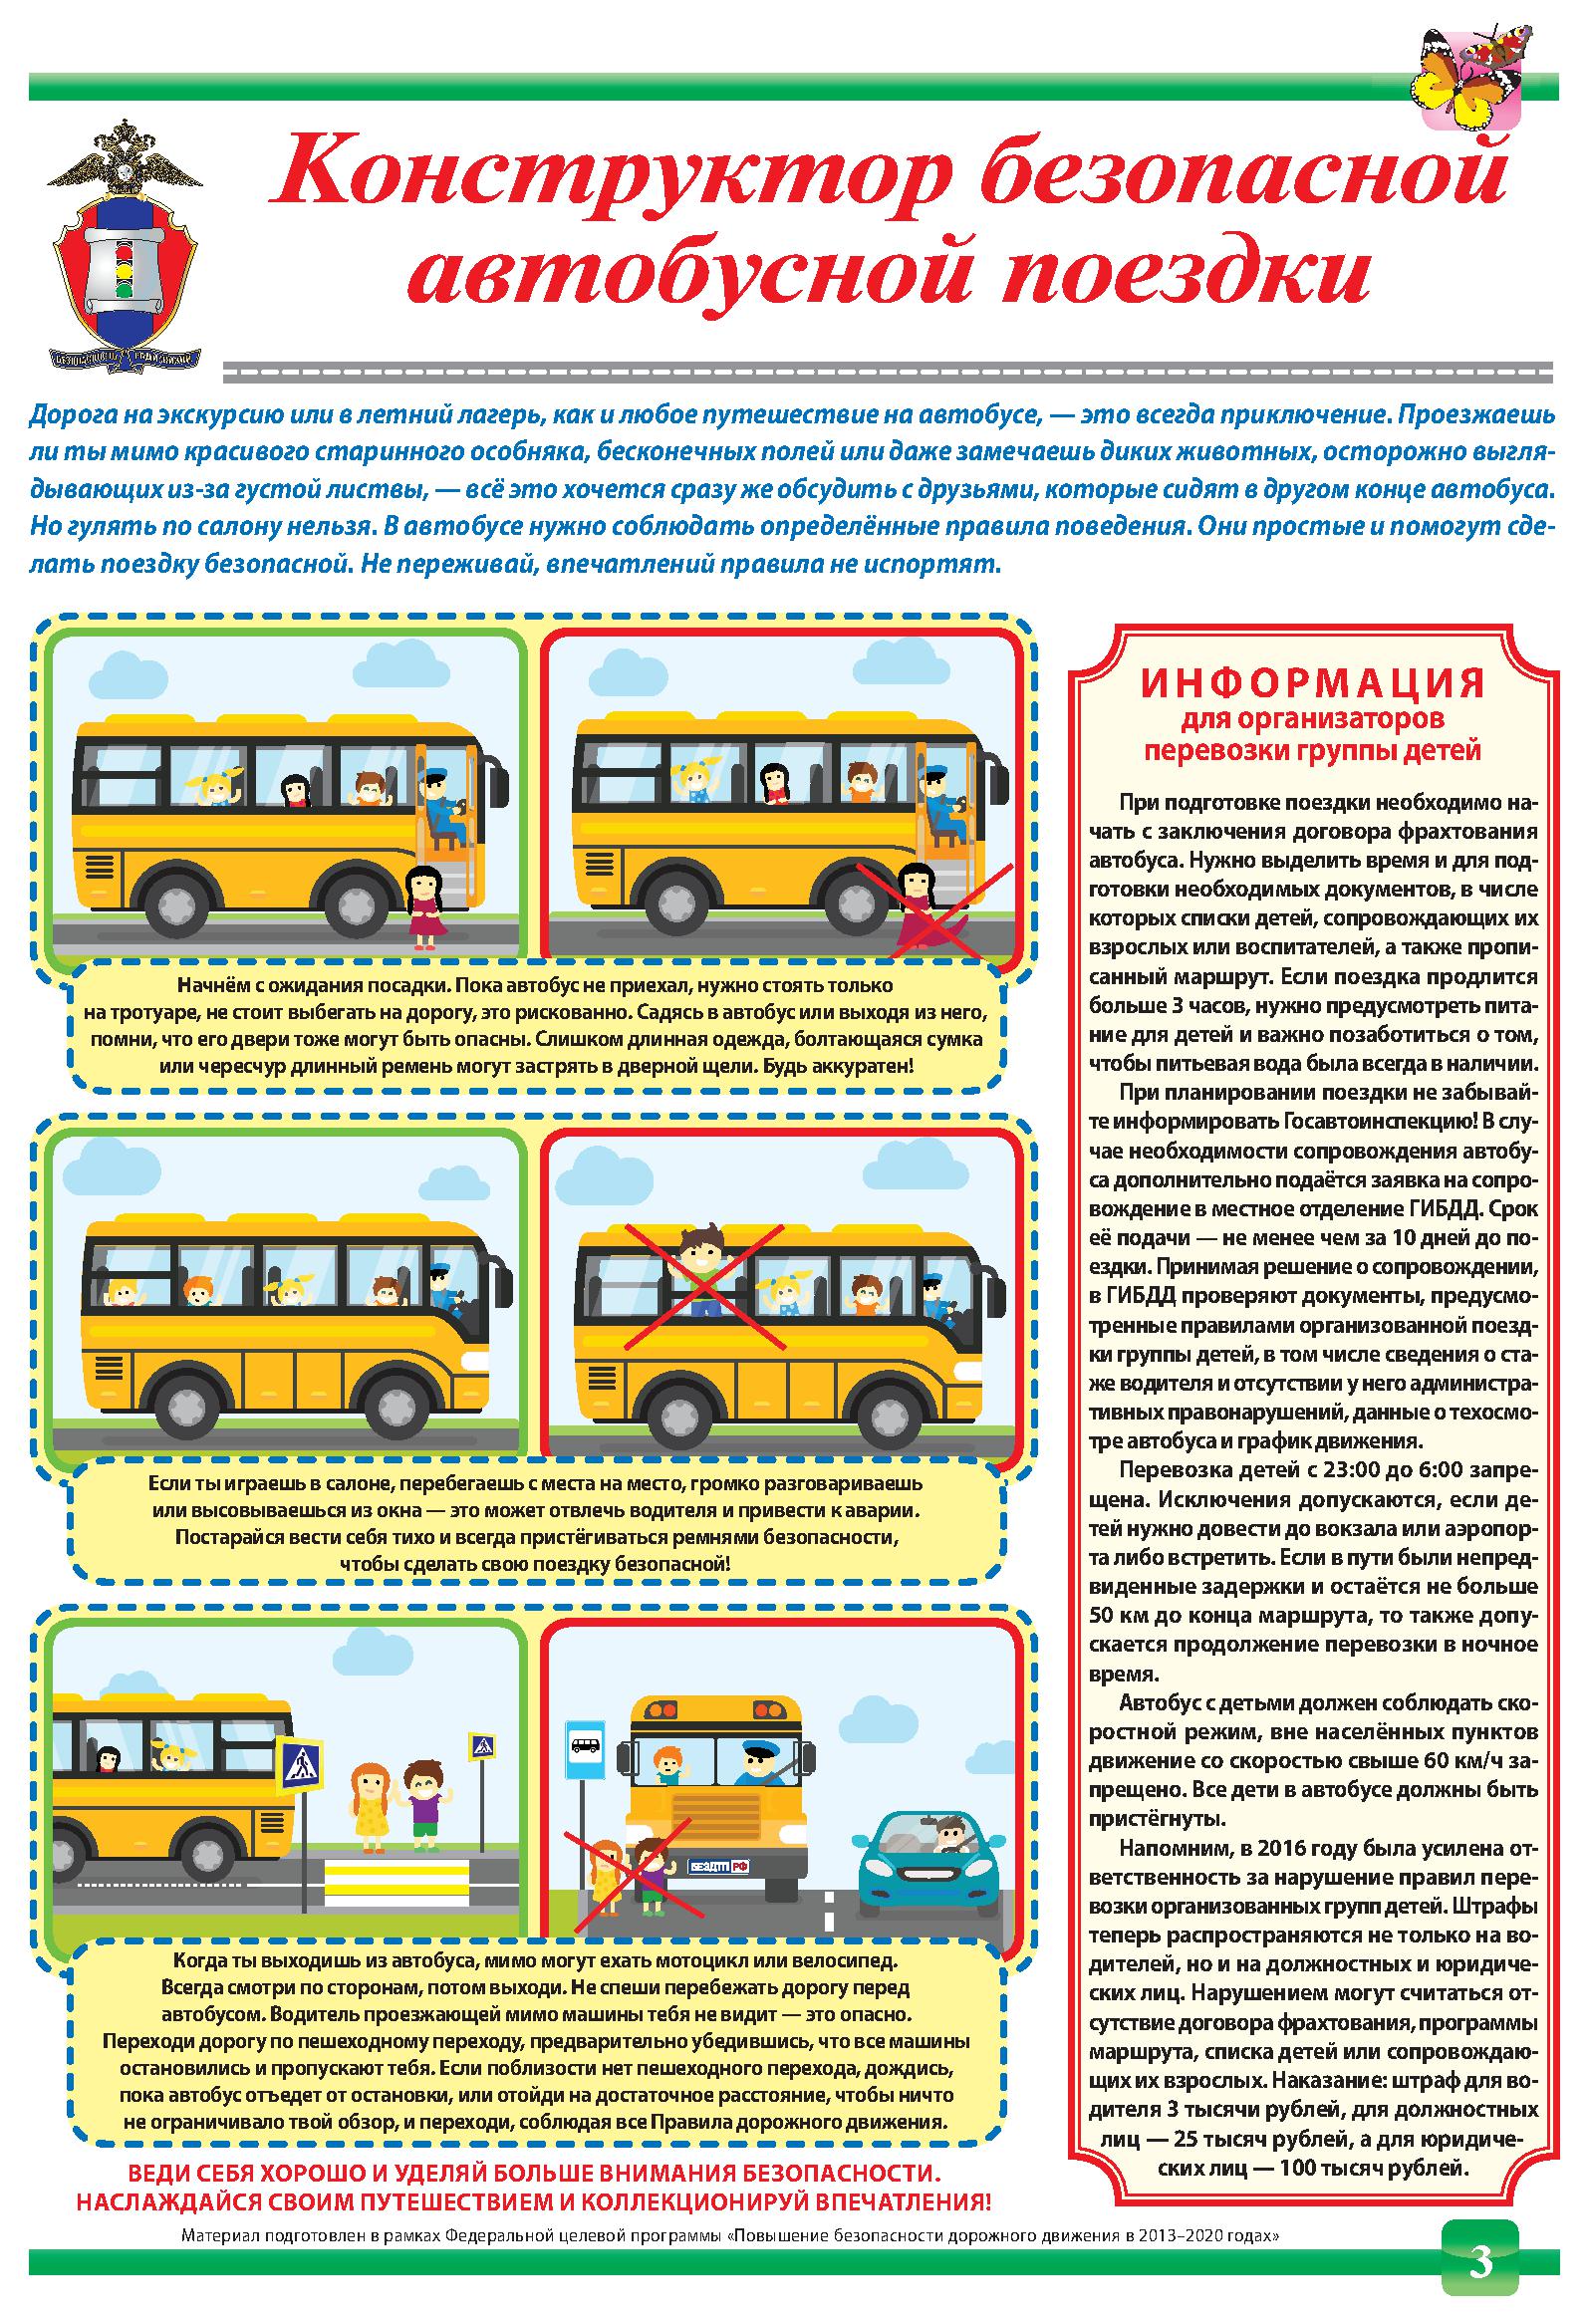 Перевозка детей автобусом требования к водителю. Памятка поведения в автобусе для школьников. Правила перевозки детей в школьном автобусе. Правила безопасности при перевозке детей. Безопасность в общественном транспорте.